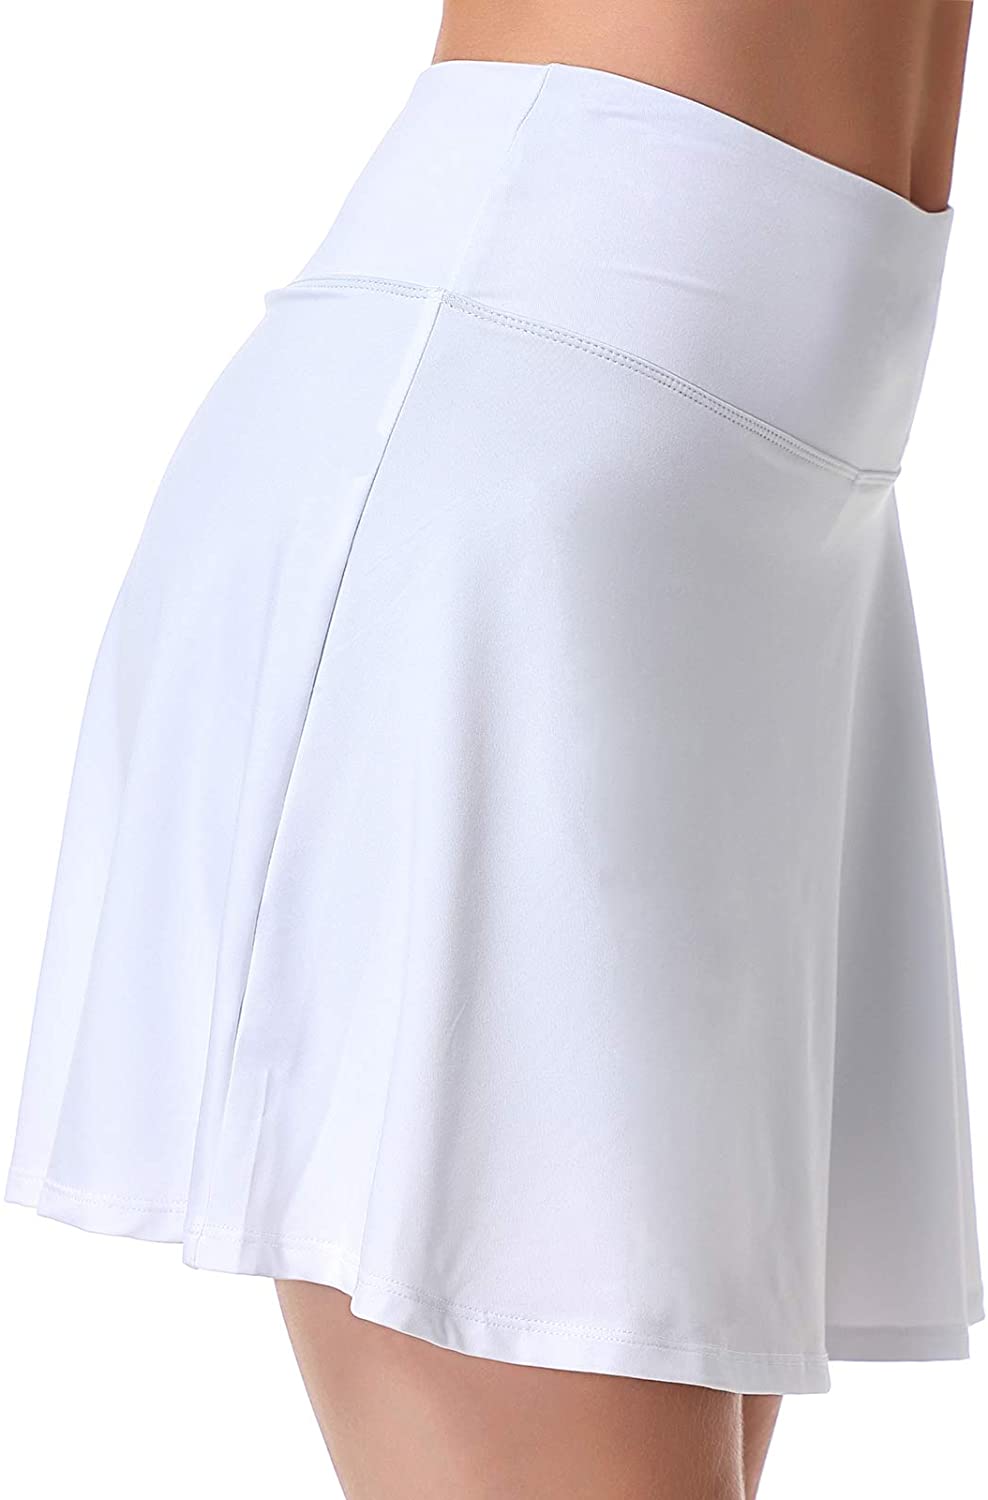 Xioker Women Tennis Skirts Lightweight,Golf Skorts Skirts Pockets&Running Skirts for Active 